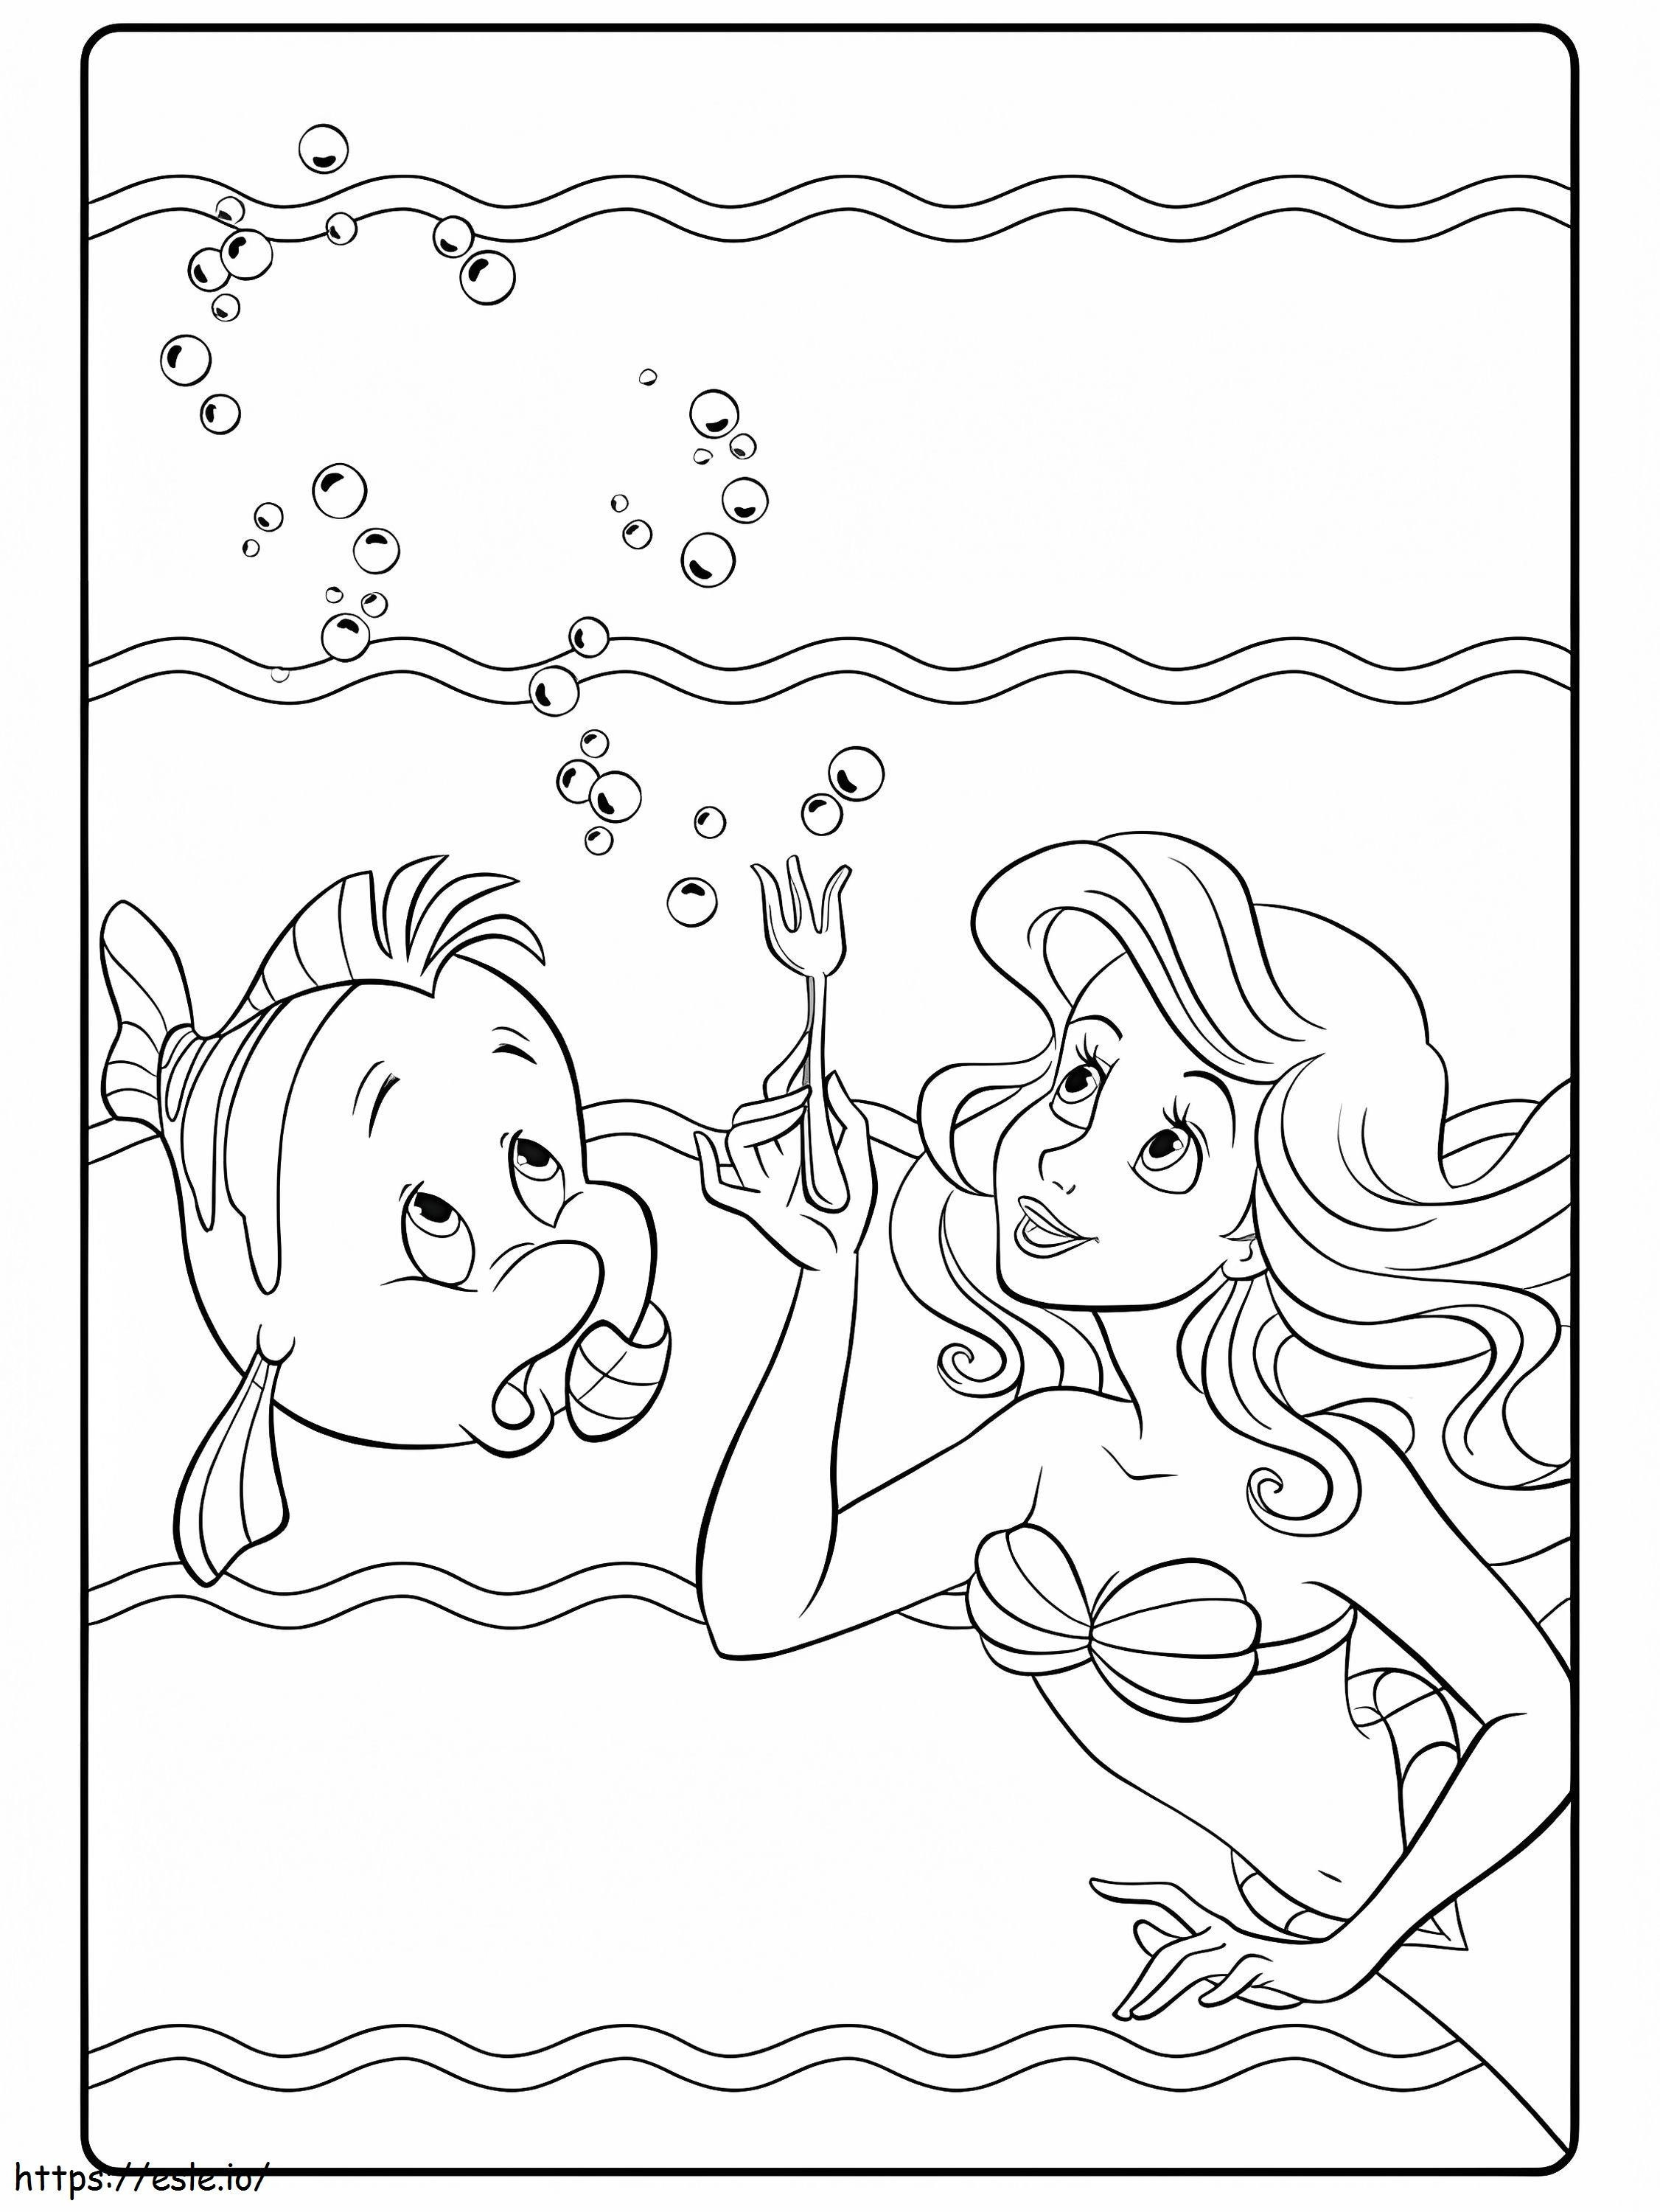 Prenses Ariel ve Balık boyama